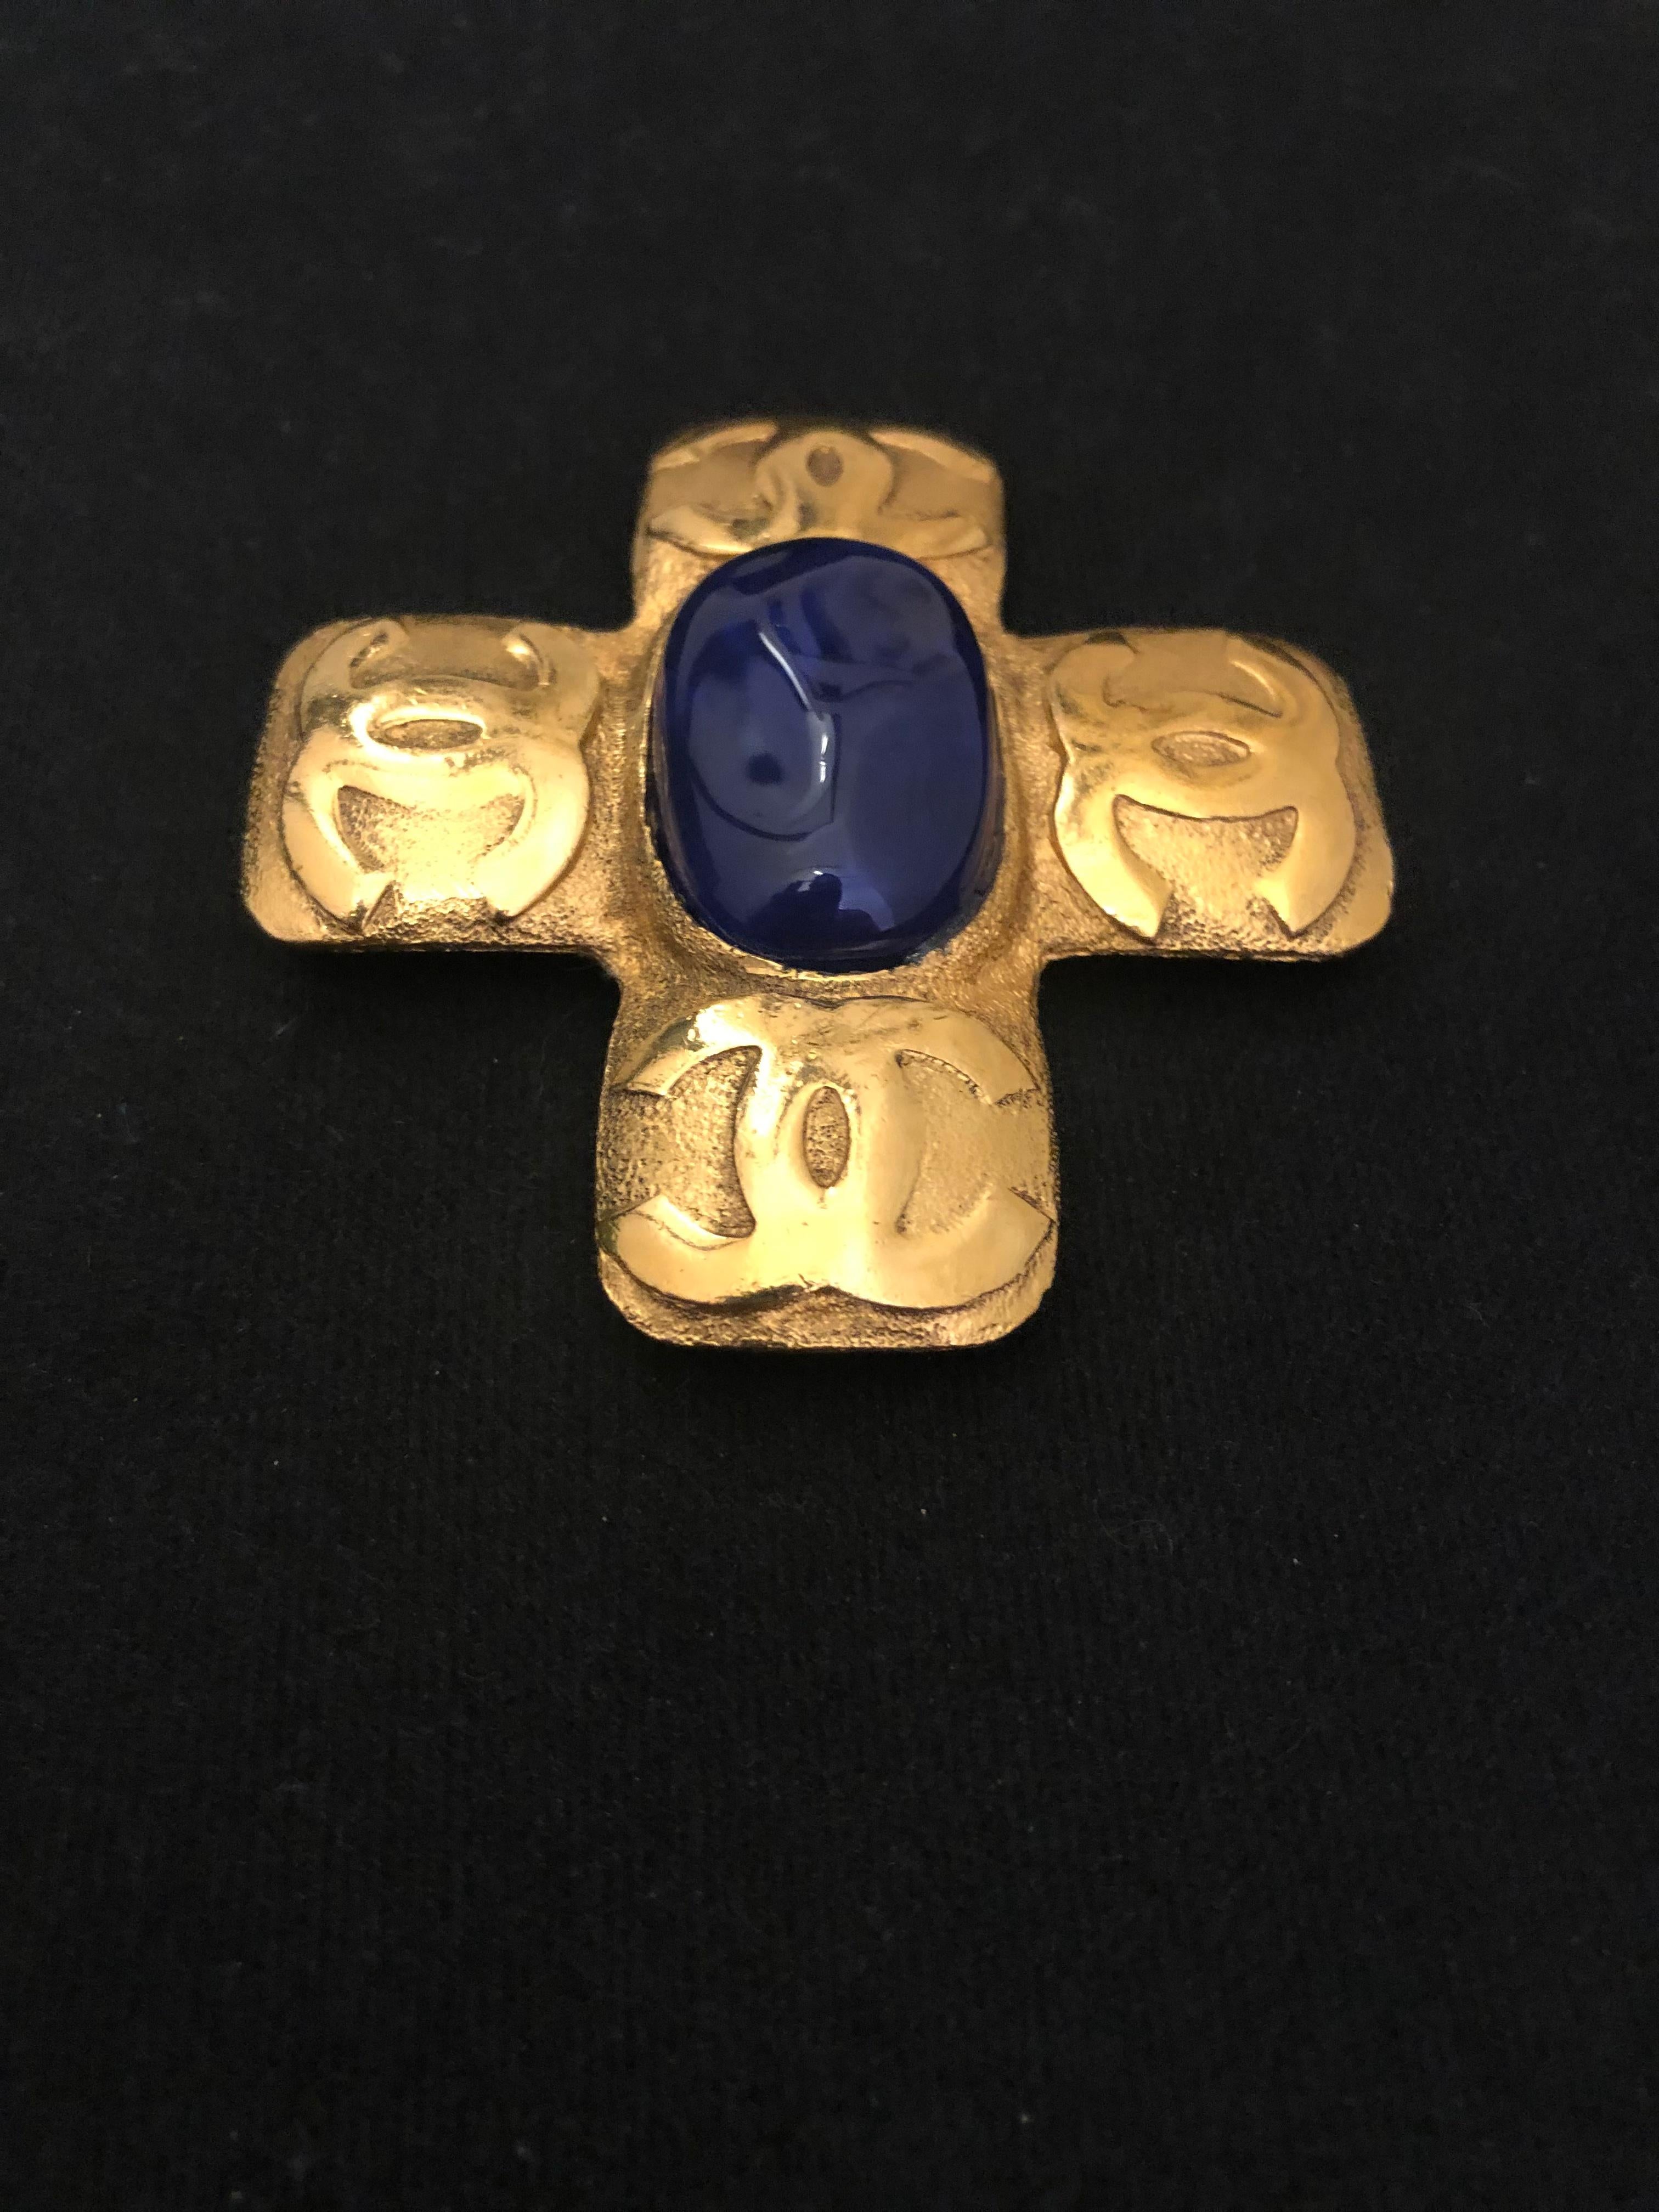 Broche Chanel du début des années 1990, en or, présentant une croix décorée de quatre logos CC et centrée d'un Gripoix bleu. Estampillé CHANEL 2 9, fabriqué en France. Mesure environ 6,7 x 6,2 cm. Livré avec boîte. 

Condit : Signes mineurs d'usure.